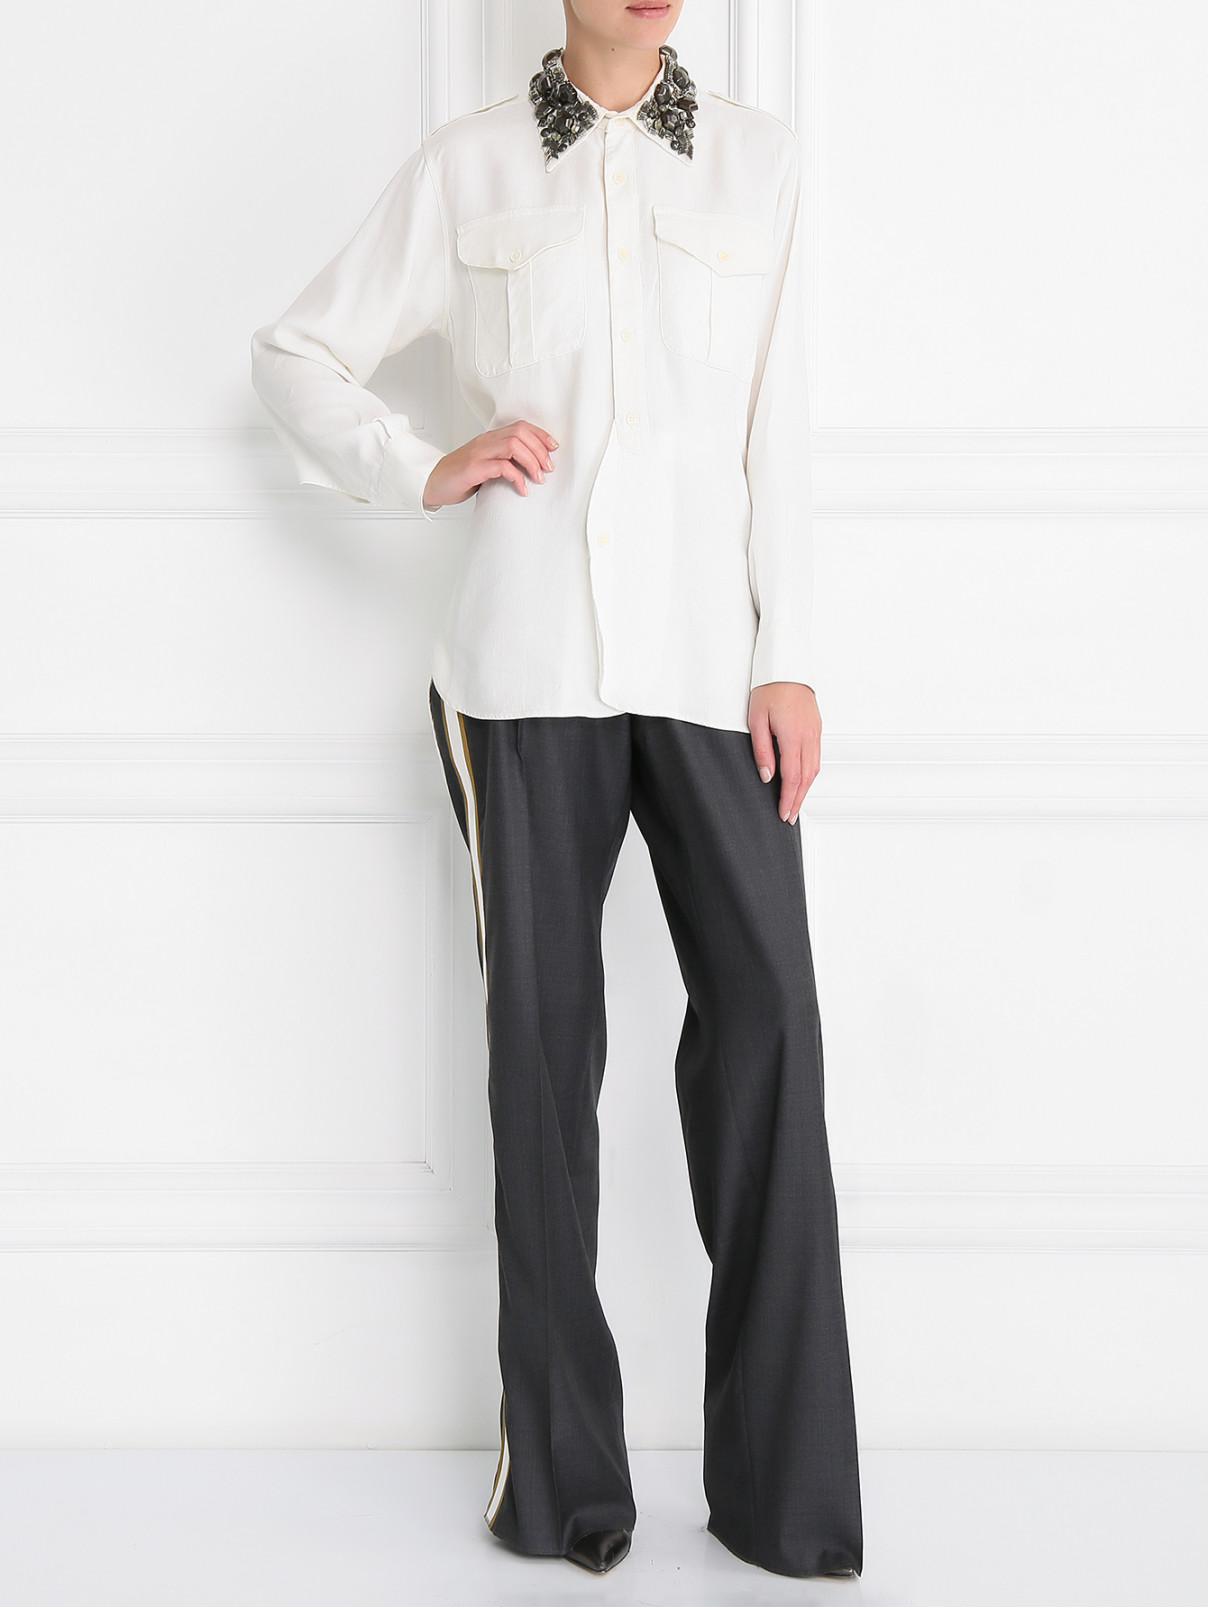 Шерстяные брюки с лампасами Dsquared2  –  Модель Общий вид  – Цвет:  Серый